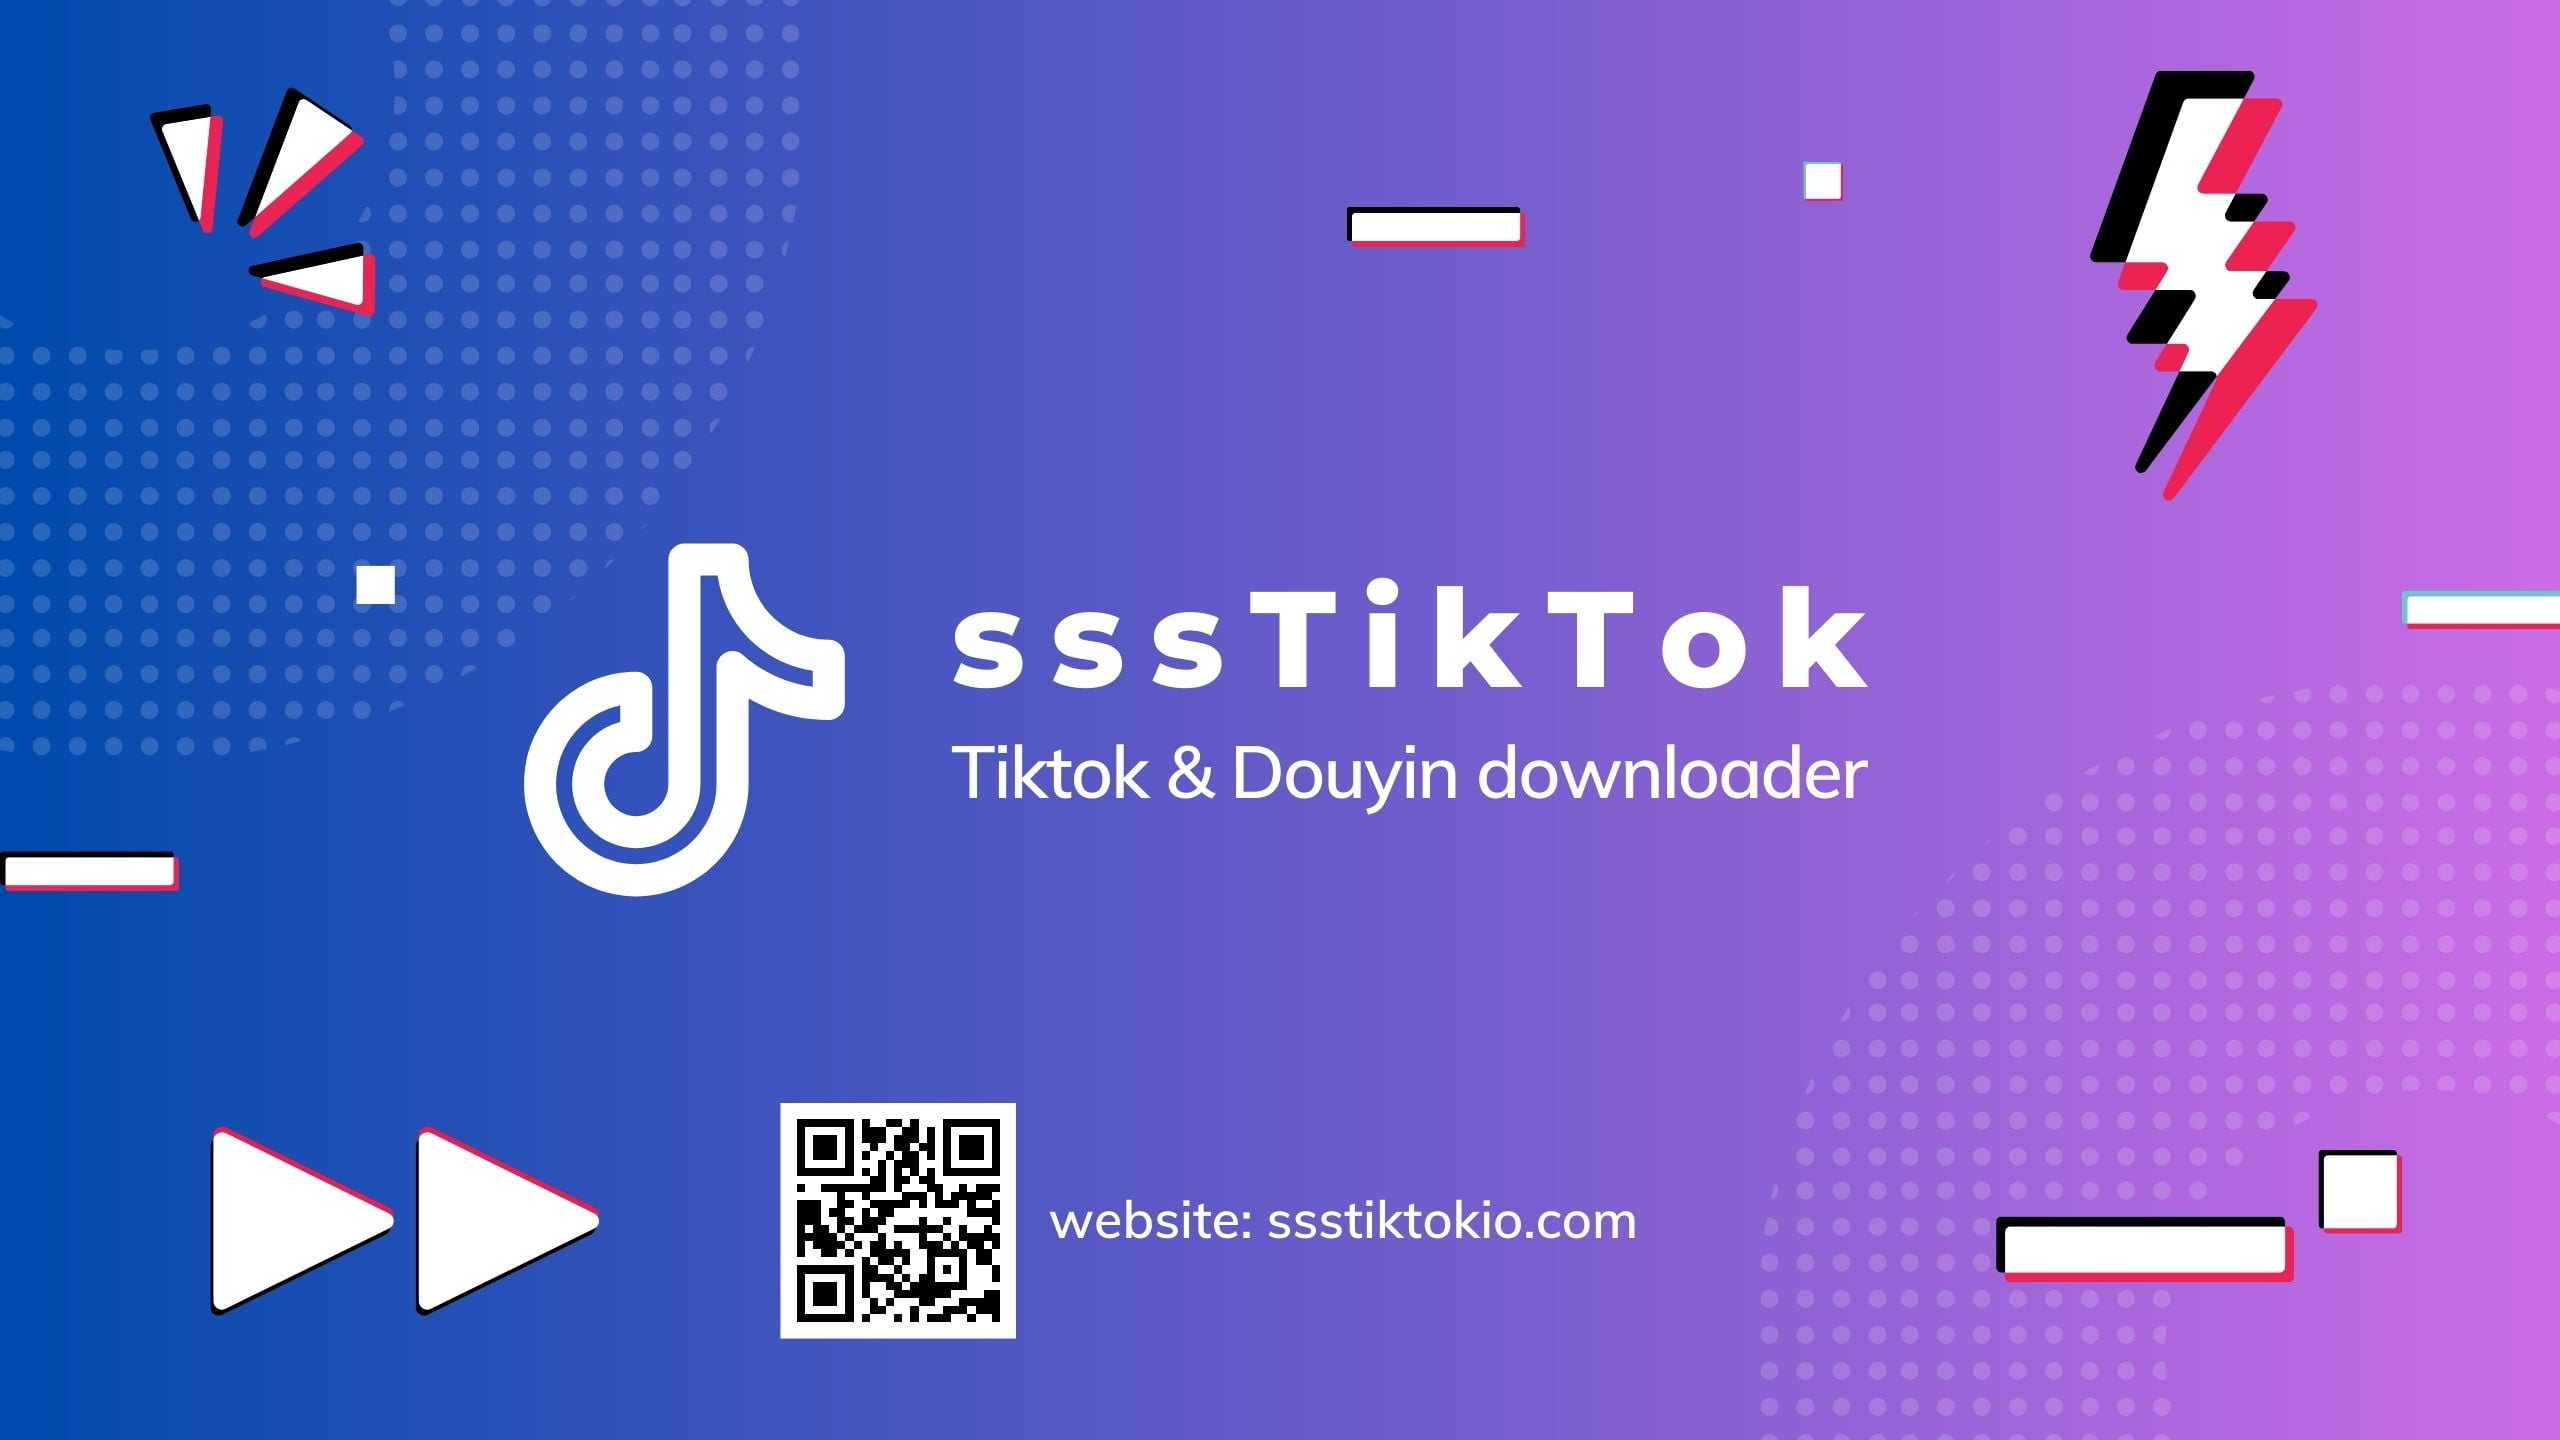 sssTiktok - تنزيل فيديو Tiktok مجاني على الإنترنت